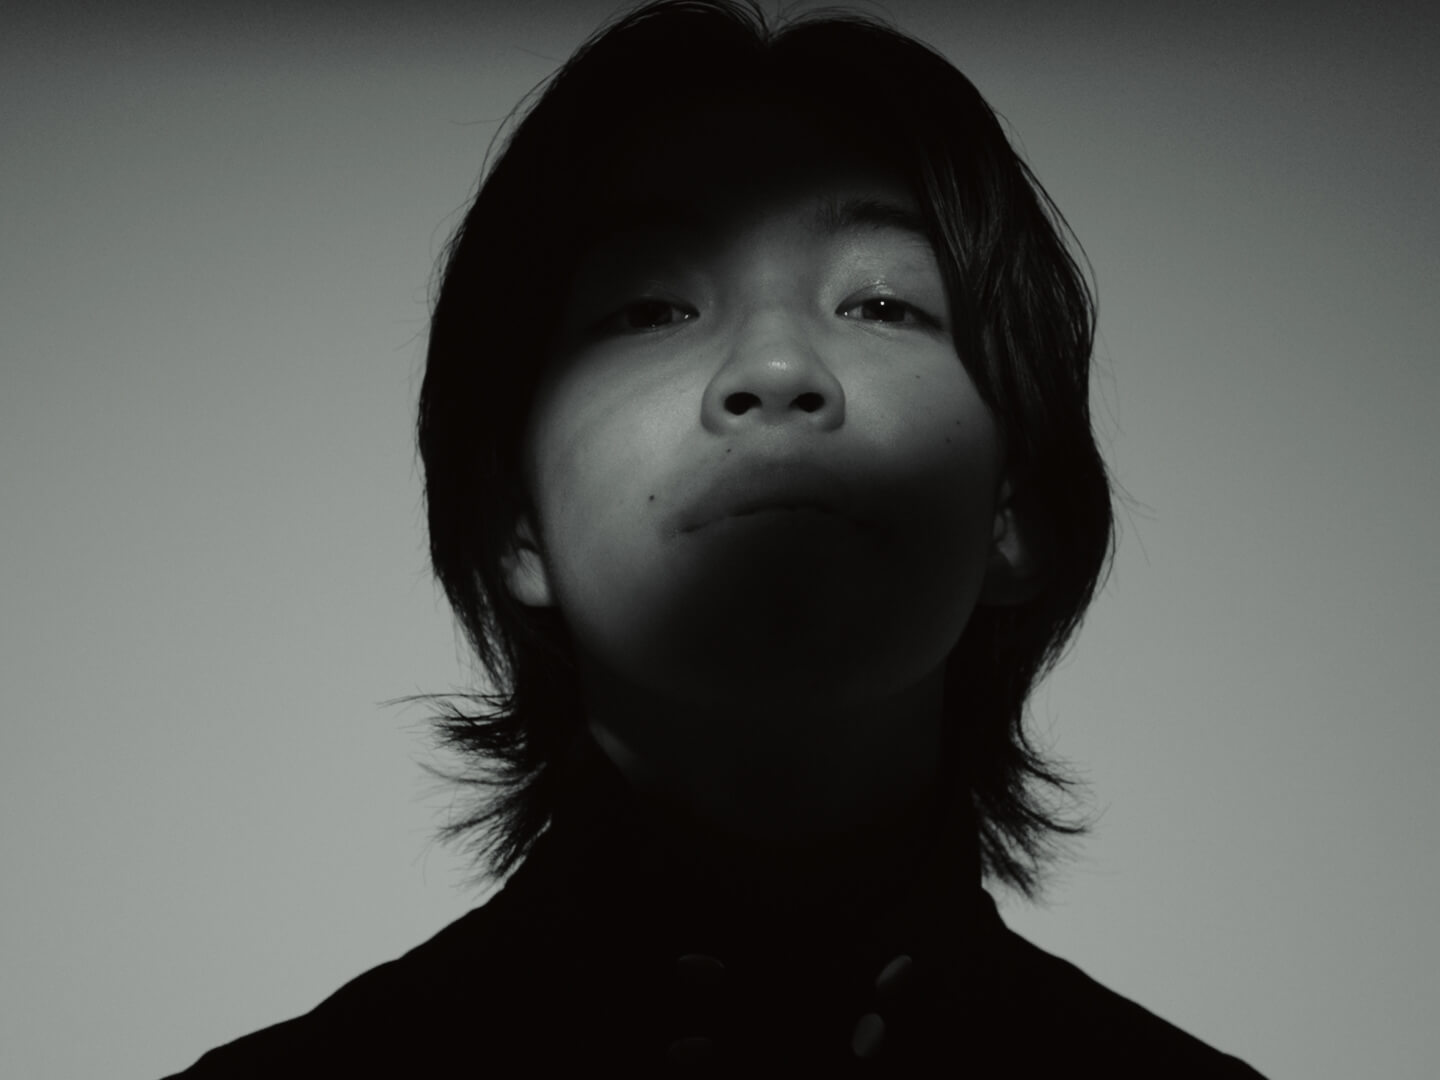 16歳のアーティスト“YOSHI”、2本のミュージックビデオの公開が決定サムネイル画像!